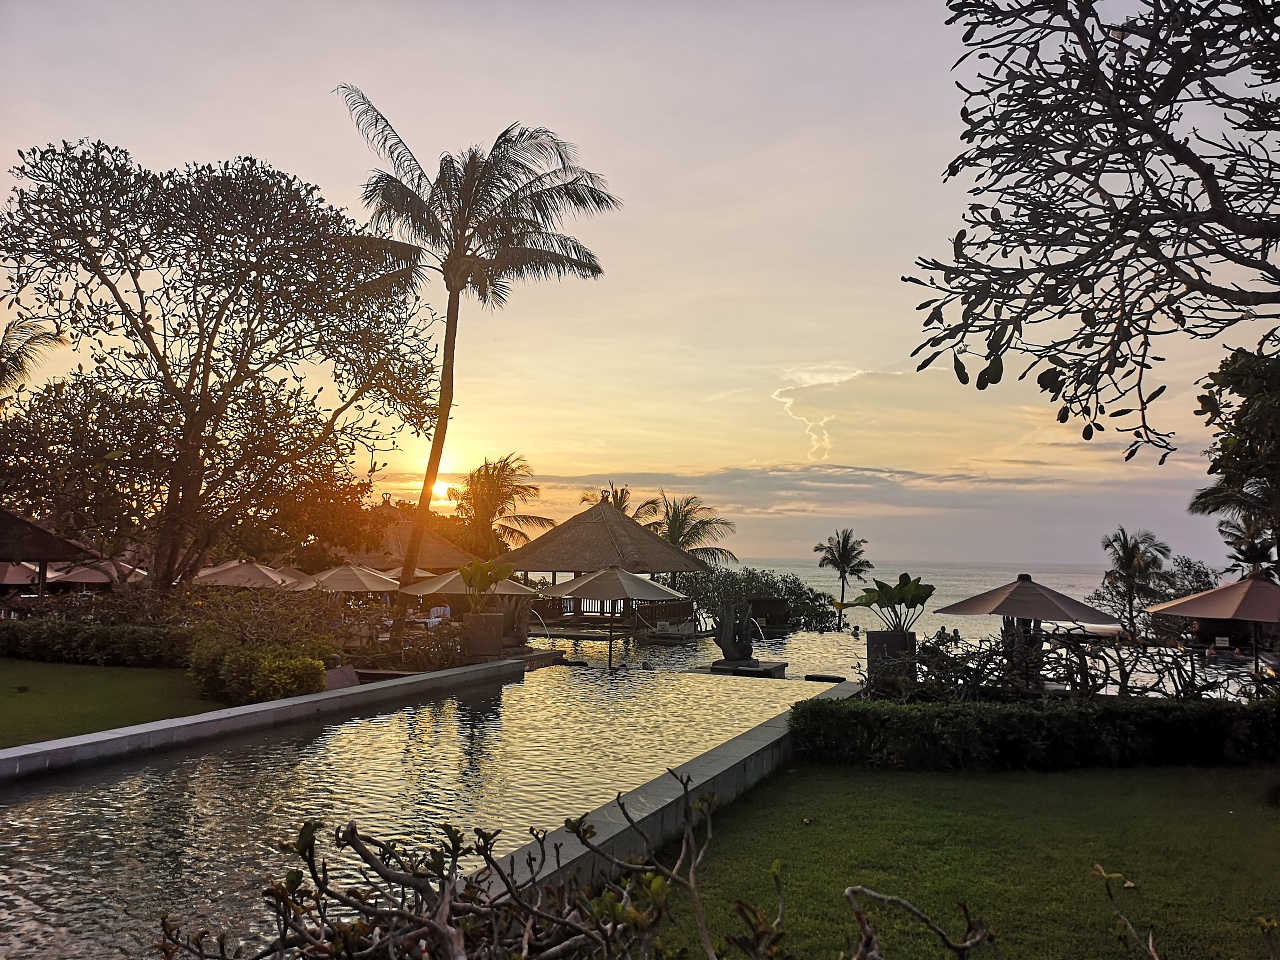 静默 寂静的一天 巴厘岛 - Pixabay上的免费照片 - Pixabay